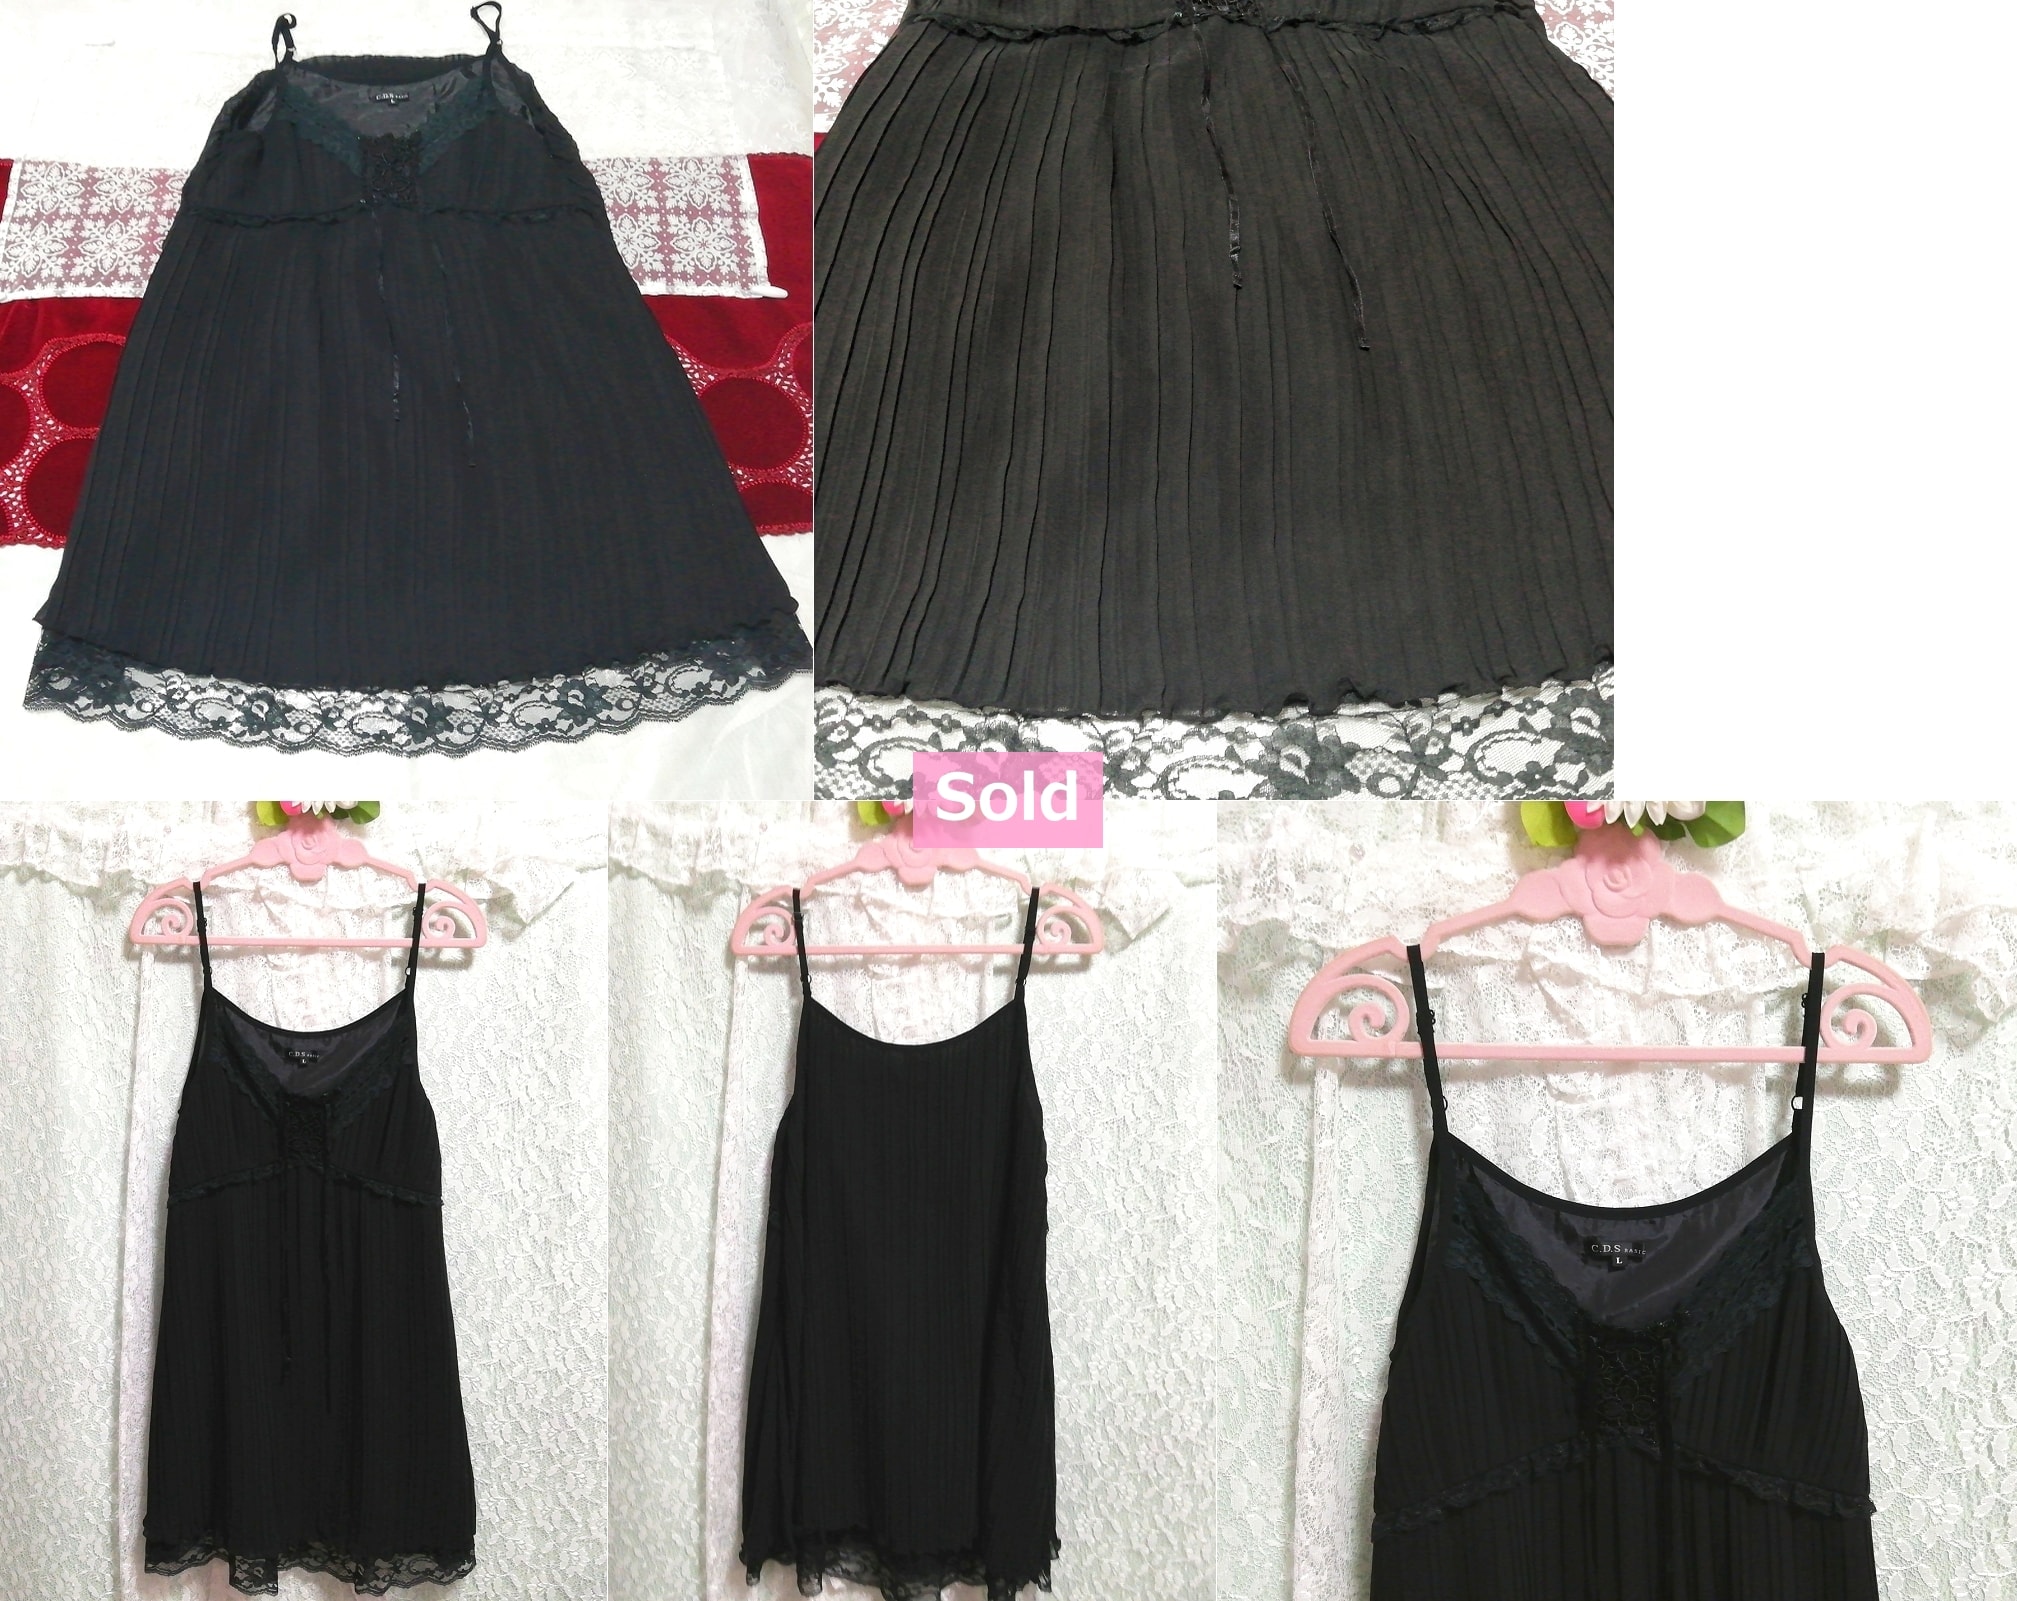 블랙 레이스 플리츠 스커트 쉬폰 나이트가운 캐미솔 드레스, 패션, 숙녀 패션, 캐미솔